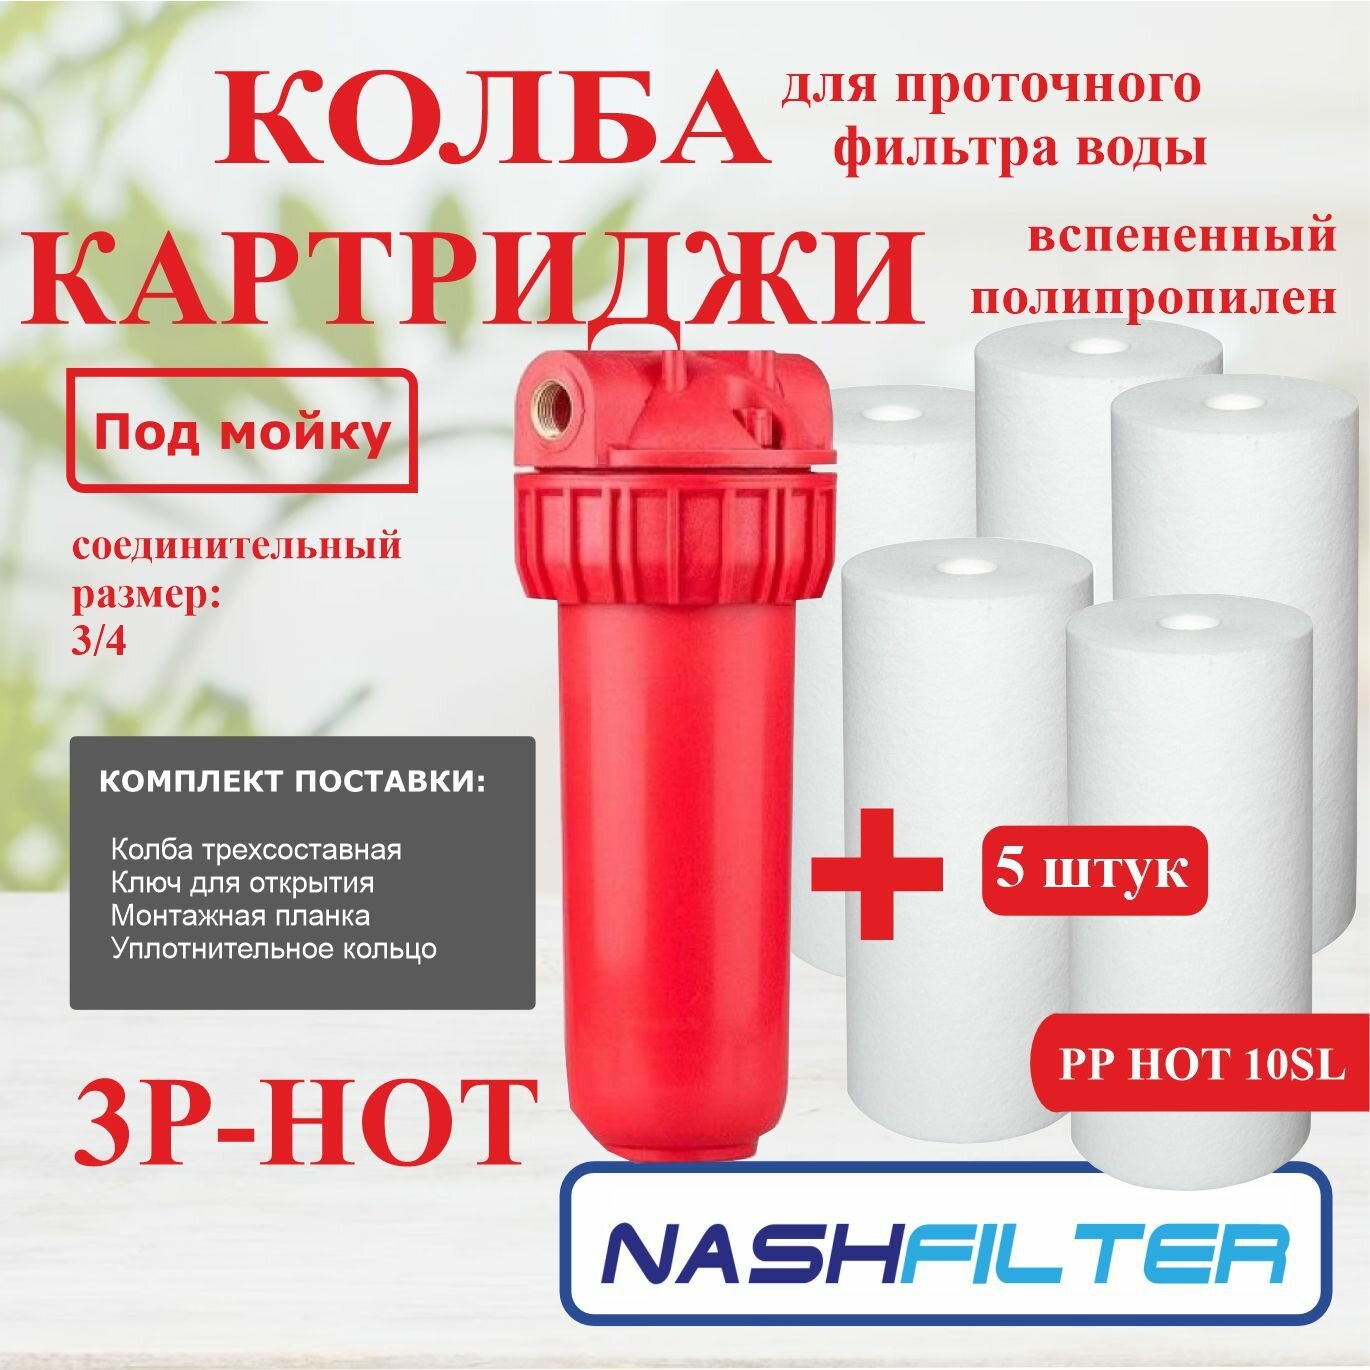 Колба (корпус) проточный фильтр горячей и холодной воды 3Р HOT (из трех частей) (соединительный размер: 3/4) и Картридж вспененный полипропилен для горячей воды РР HOT 10SL (5 штук)